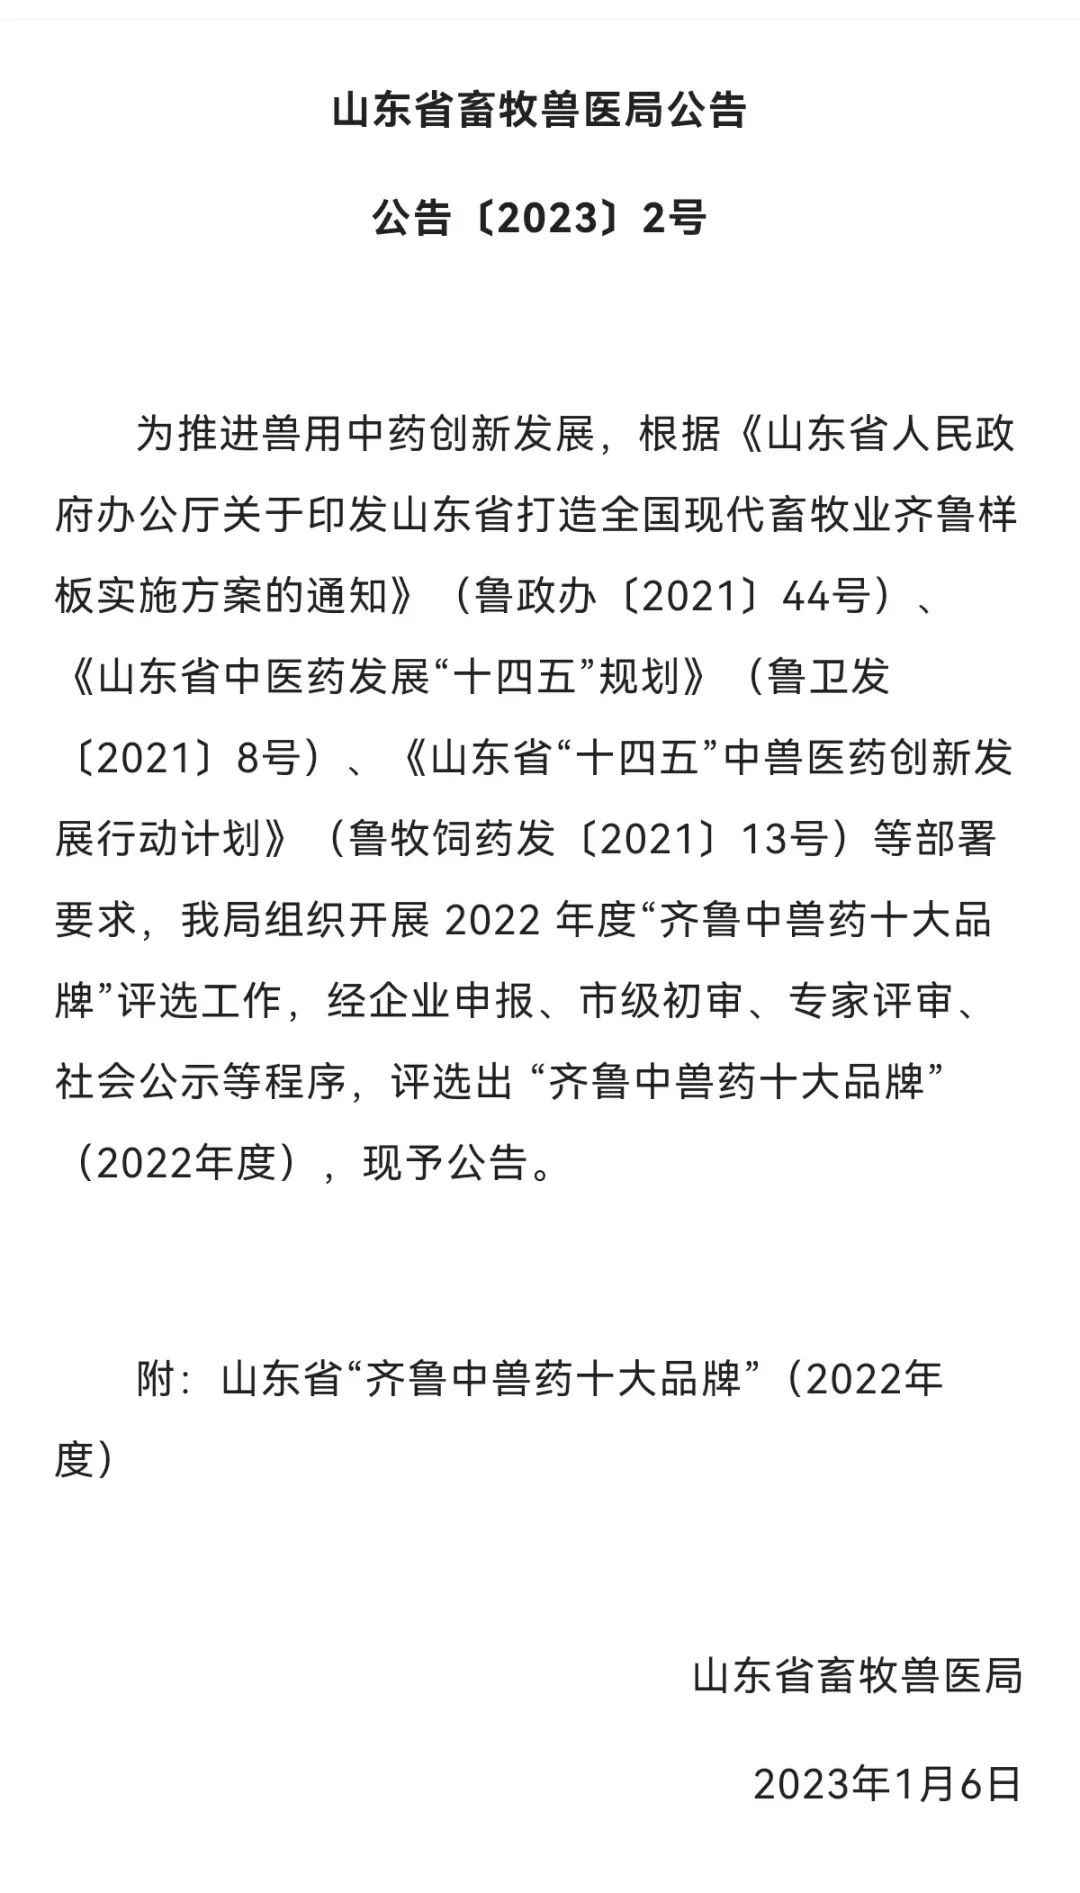 山東信合再次榮獲2022年度“齊魯中獸藥十大品牌”榮譽稱號